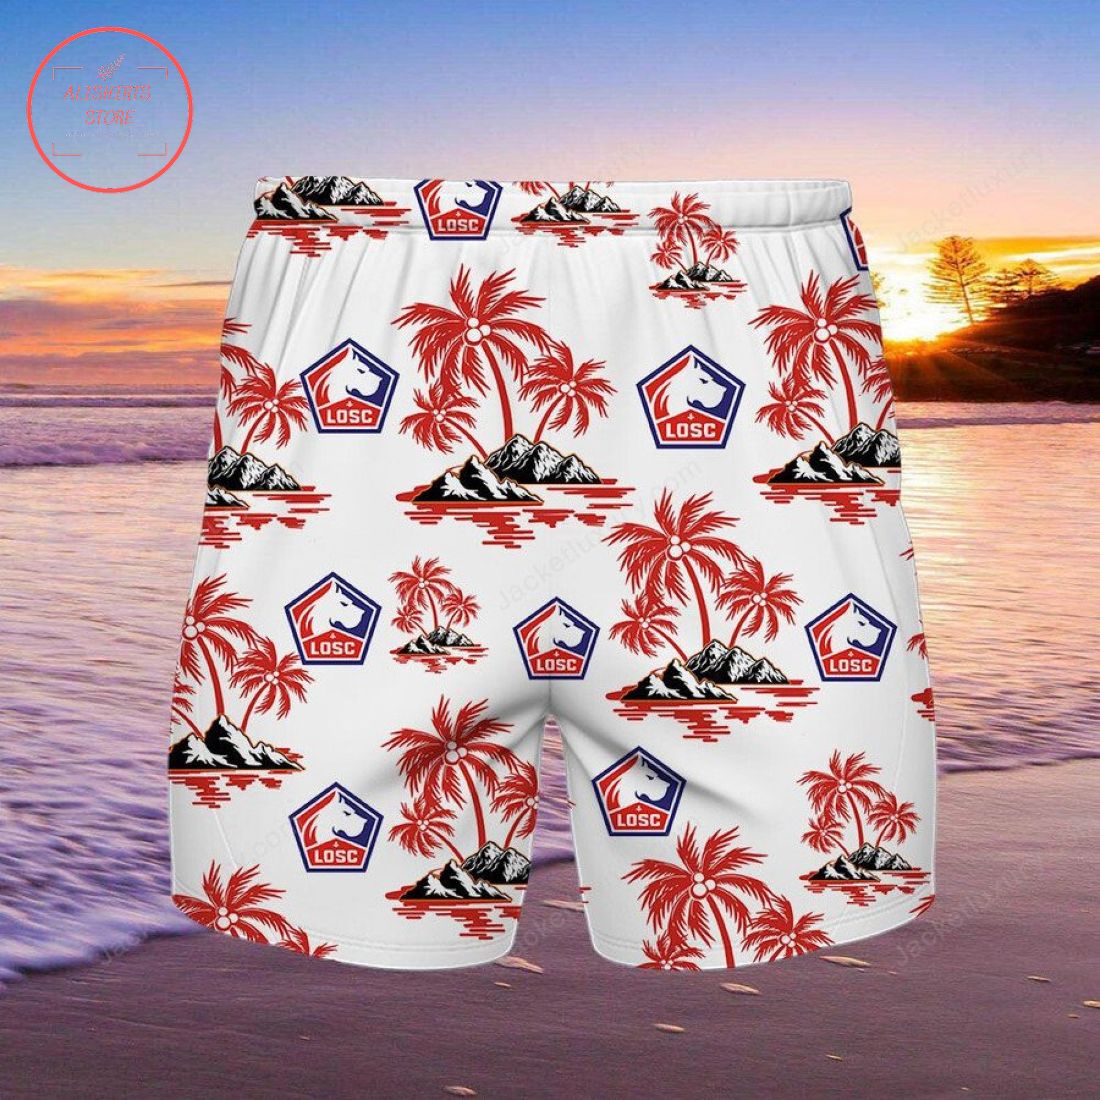 LOSC Lille Hawaiian shirt and shorts